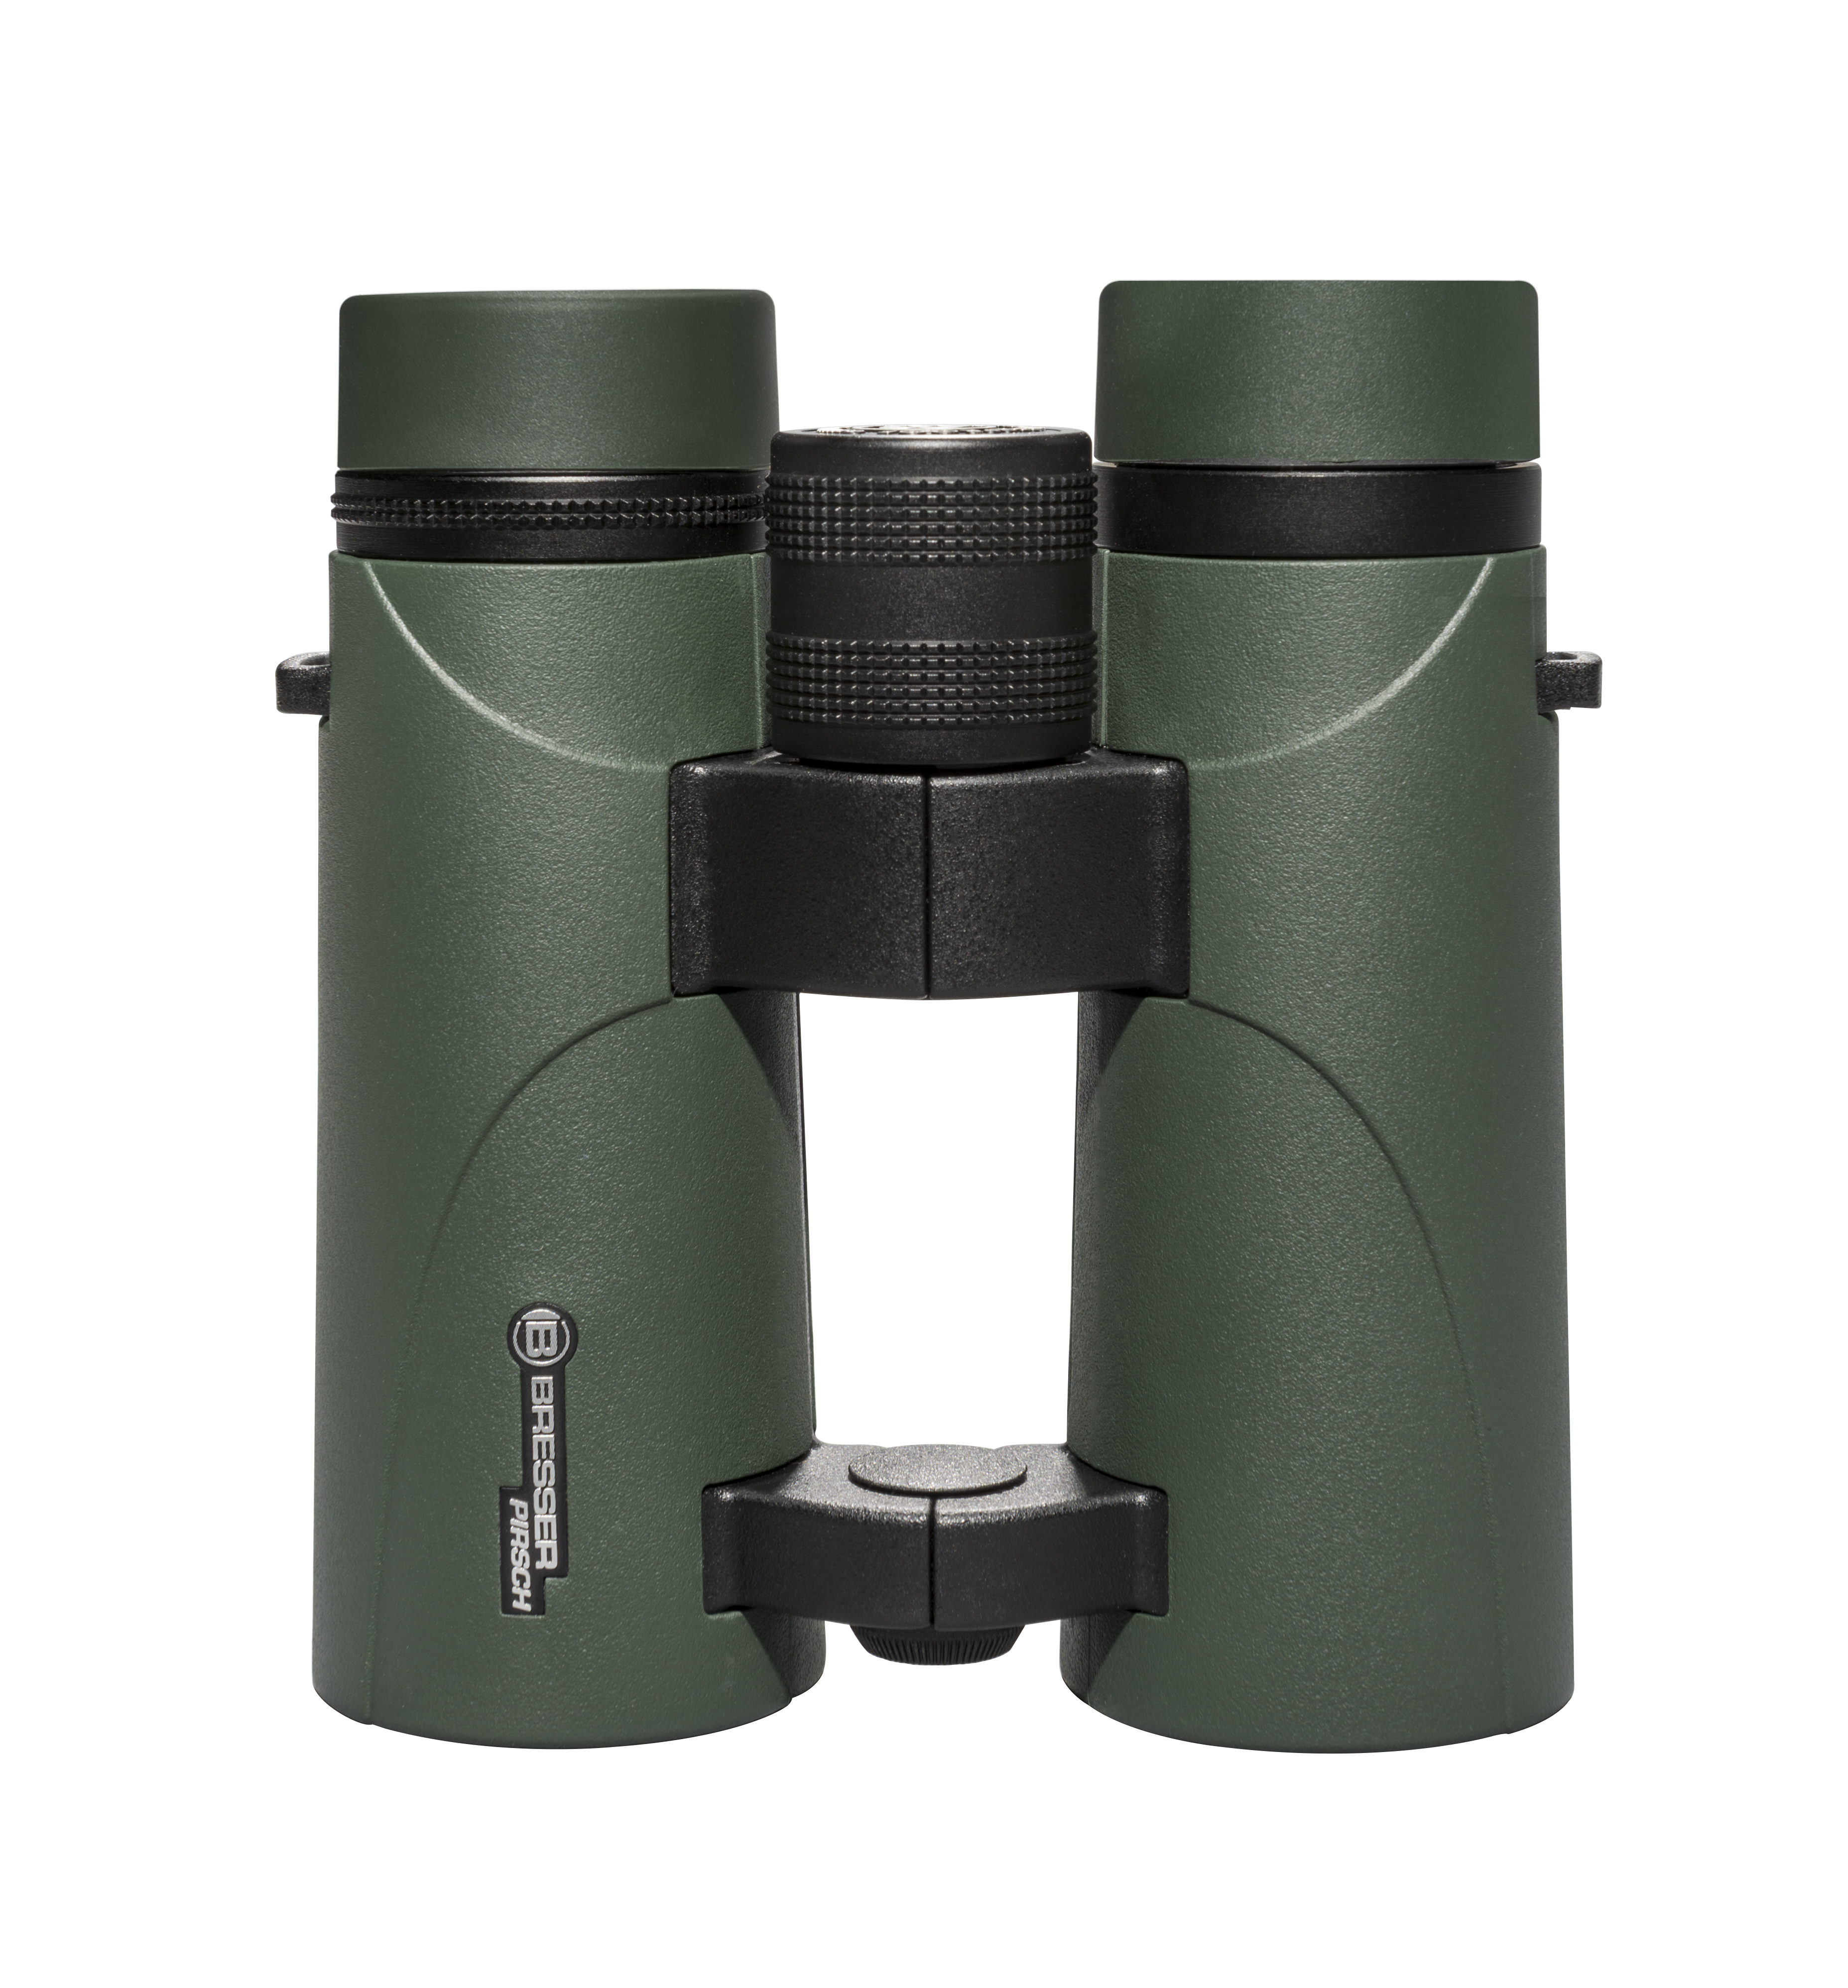 BRESSER Pirsch 8x42 Binoculars with Phase Coating